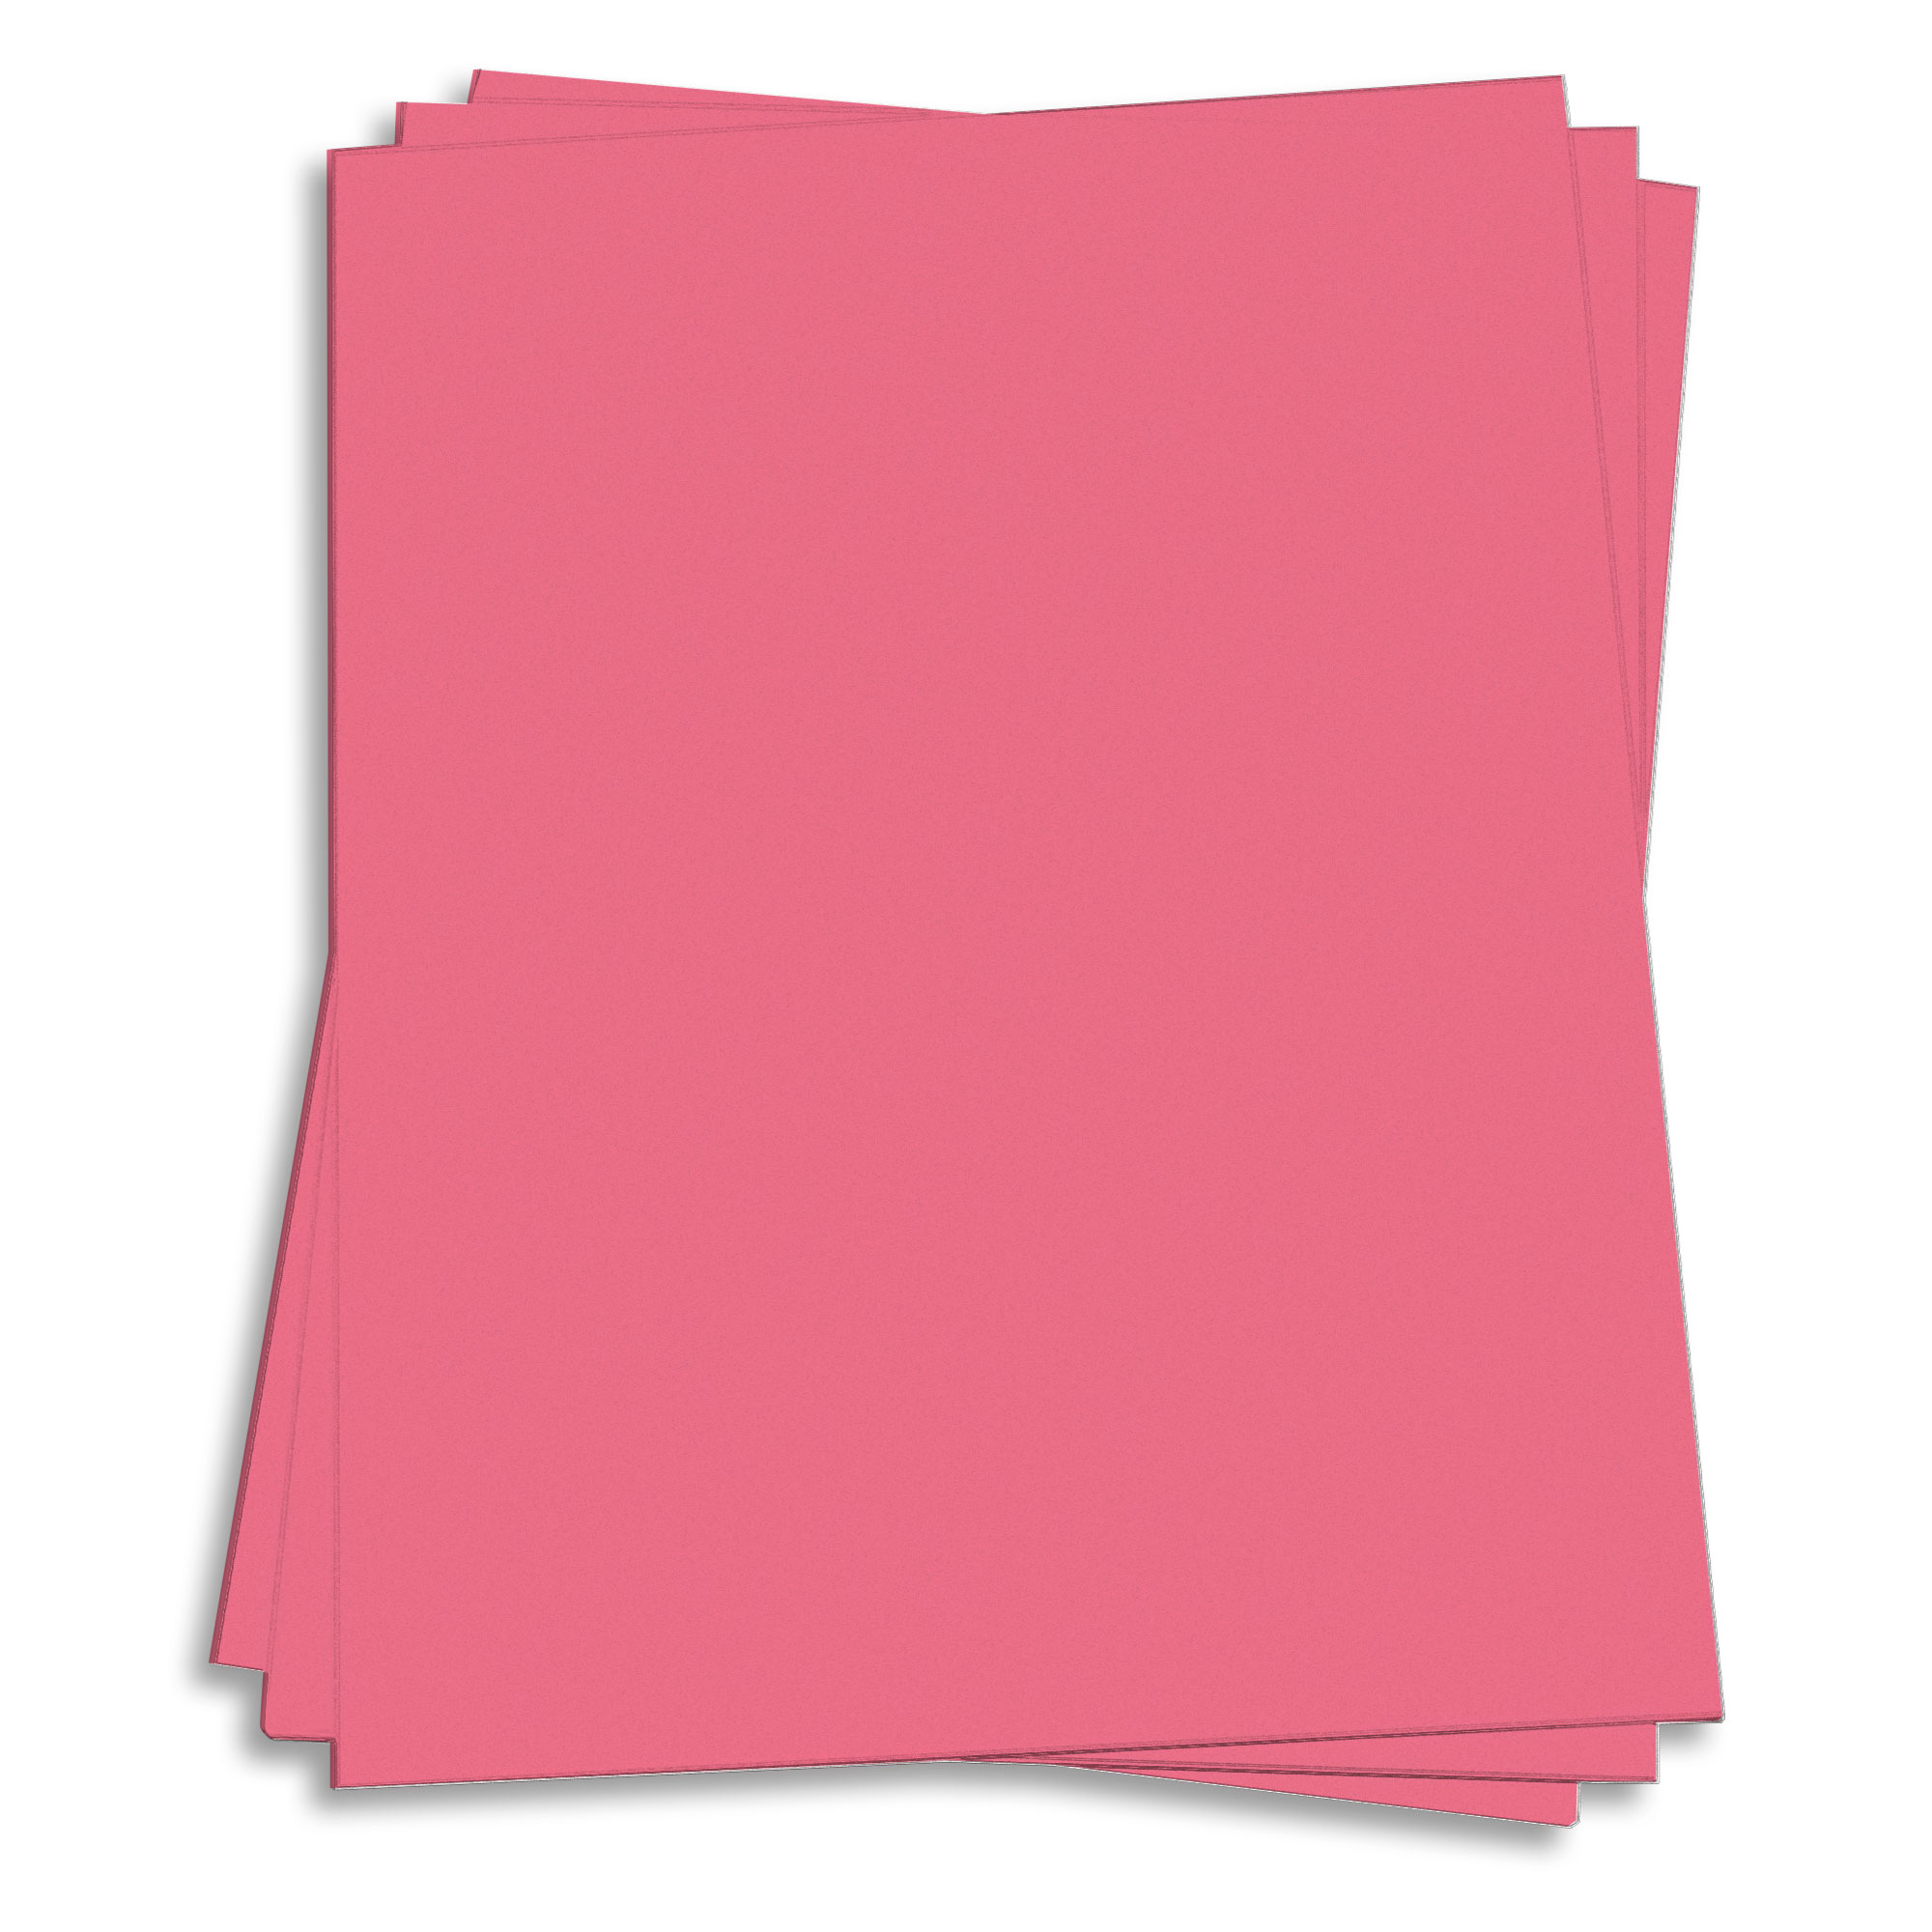 Pulsar Pink Paper - 8 1/2 x 11 60lb Text